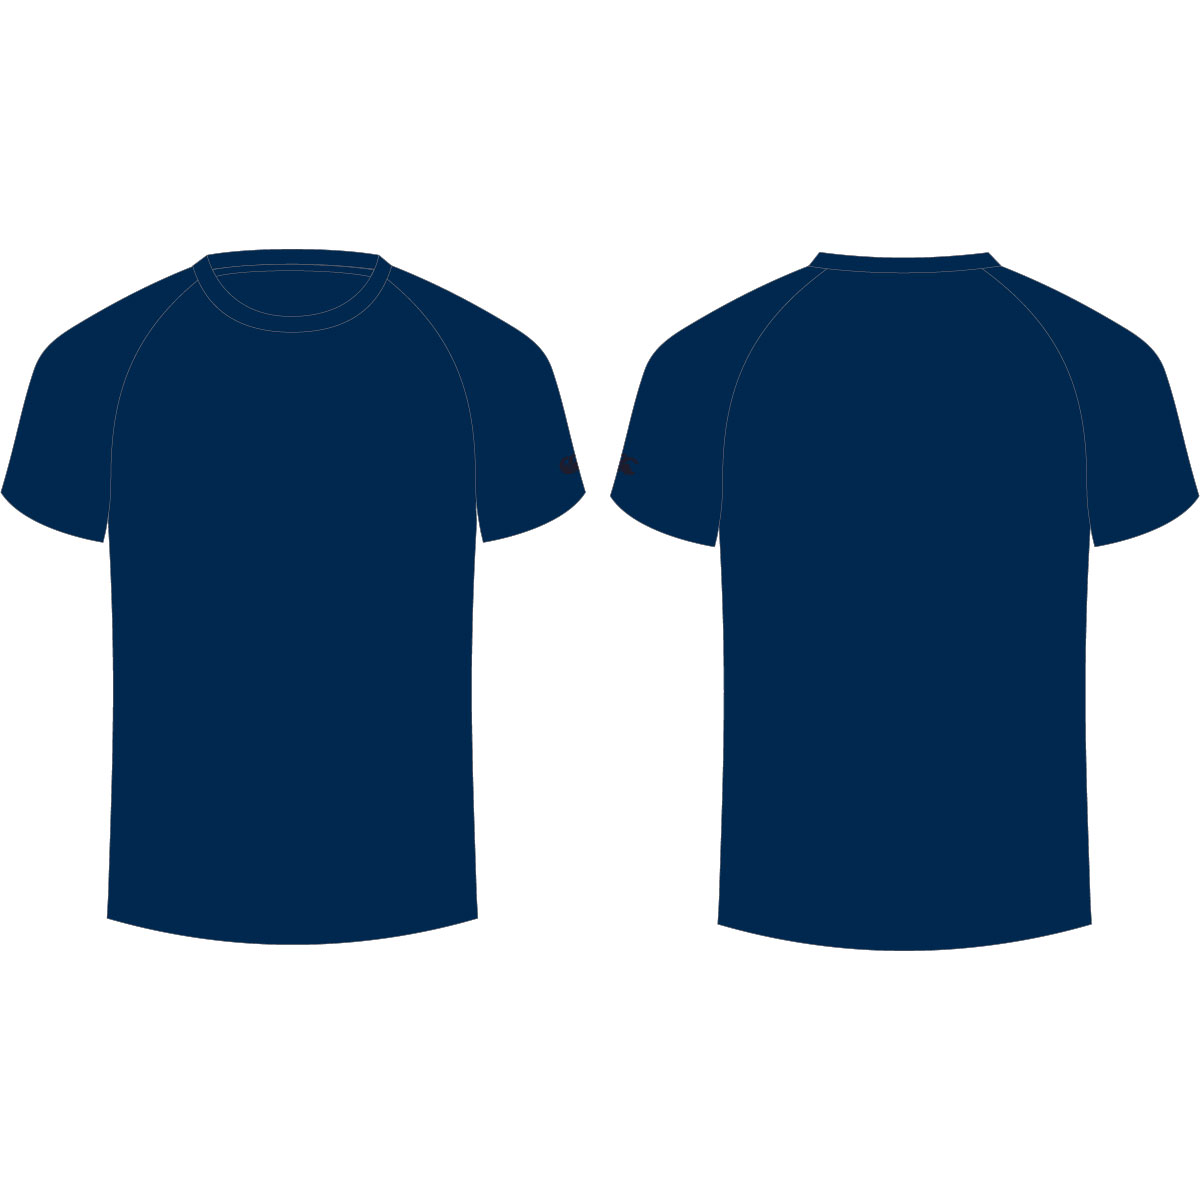 navy-blue-t-shirt-template